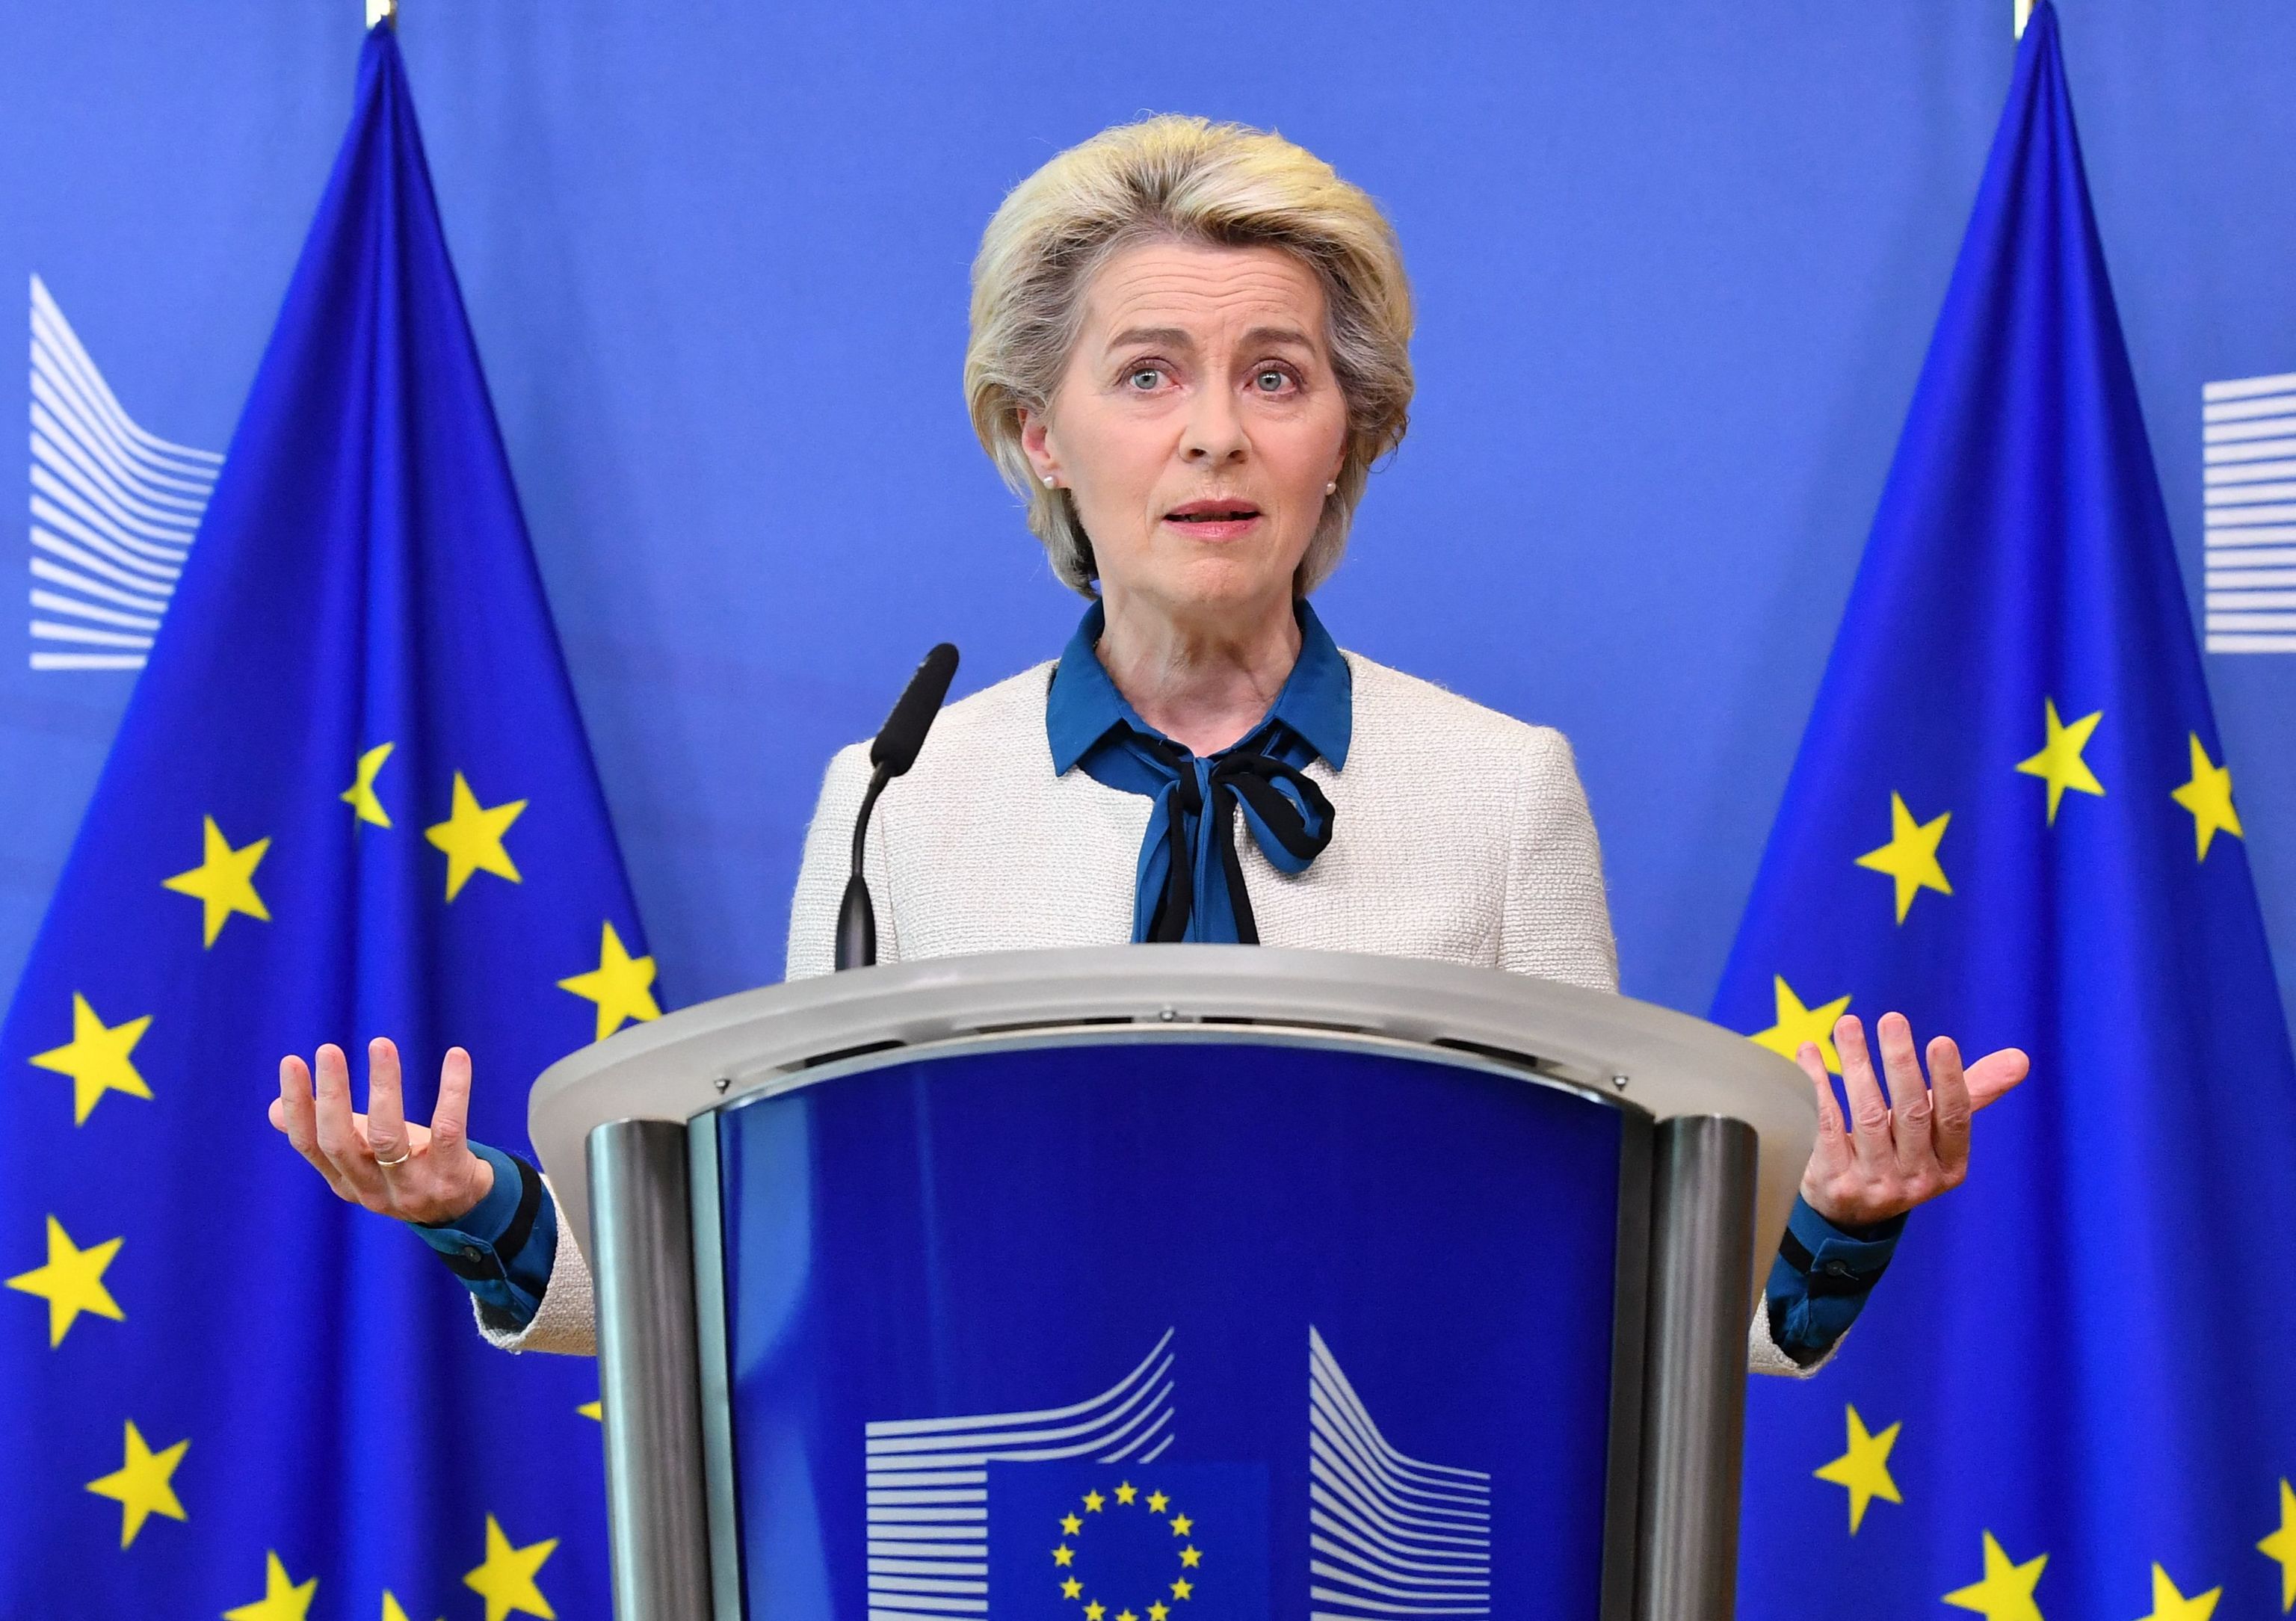 La presidenta de la Comisión Europea, Ursula von der Leyen, hace una declaración sobre las propuestas de la Comisión sobre el tema "REPowerEU, lagunas de inversión en defensa y la reconstrucción de socorro de Ucrania" en la sede de la UE en Bruselas el 18 de mayo de 2022. - La jefa de la UE, Ursula von der Leyen, propuso una ayuda adicional a Ucrania este año de hasta 9.000 millones de euros (9.500 millones de dólares) para ayudarla a hacer frente a los estragos de la guerra.